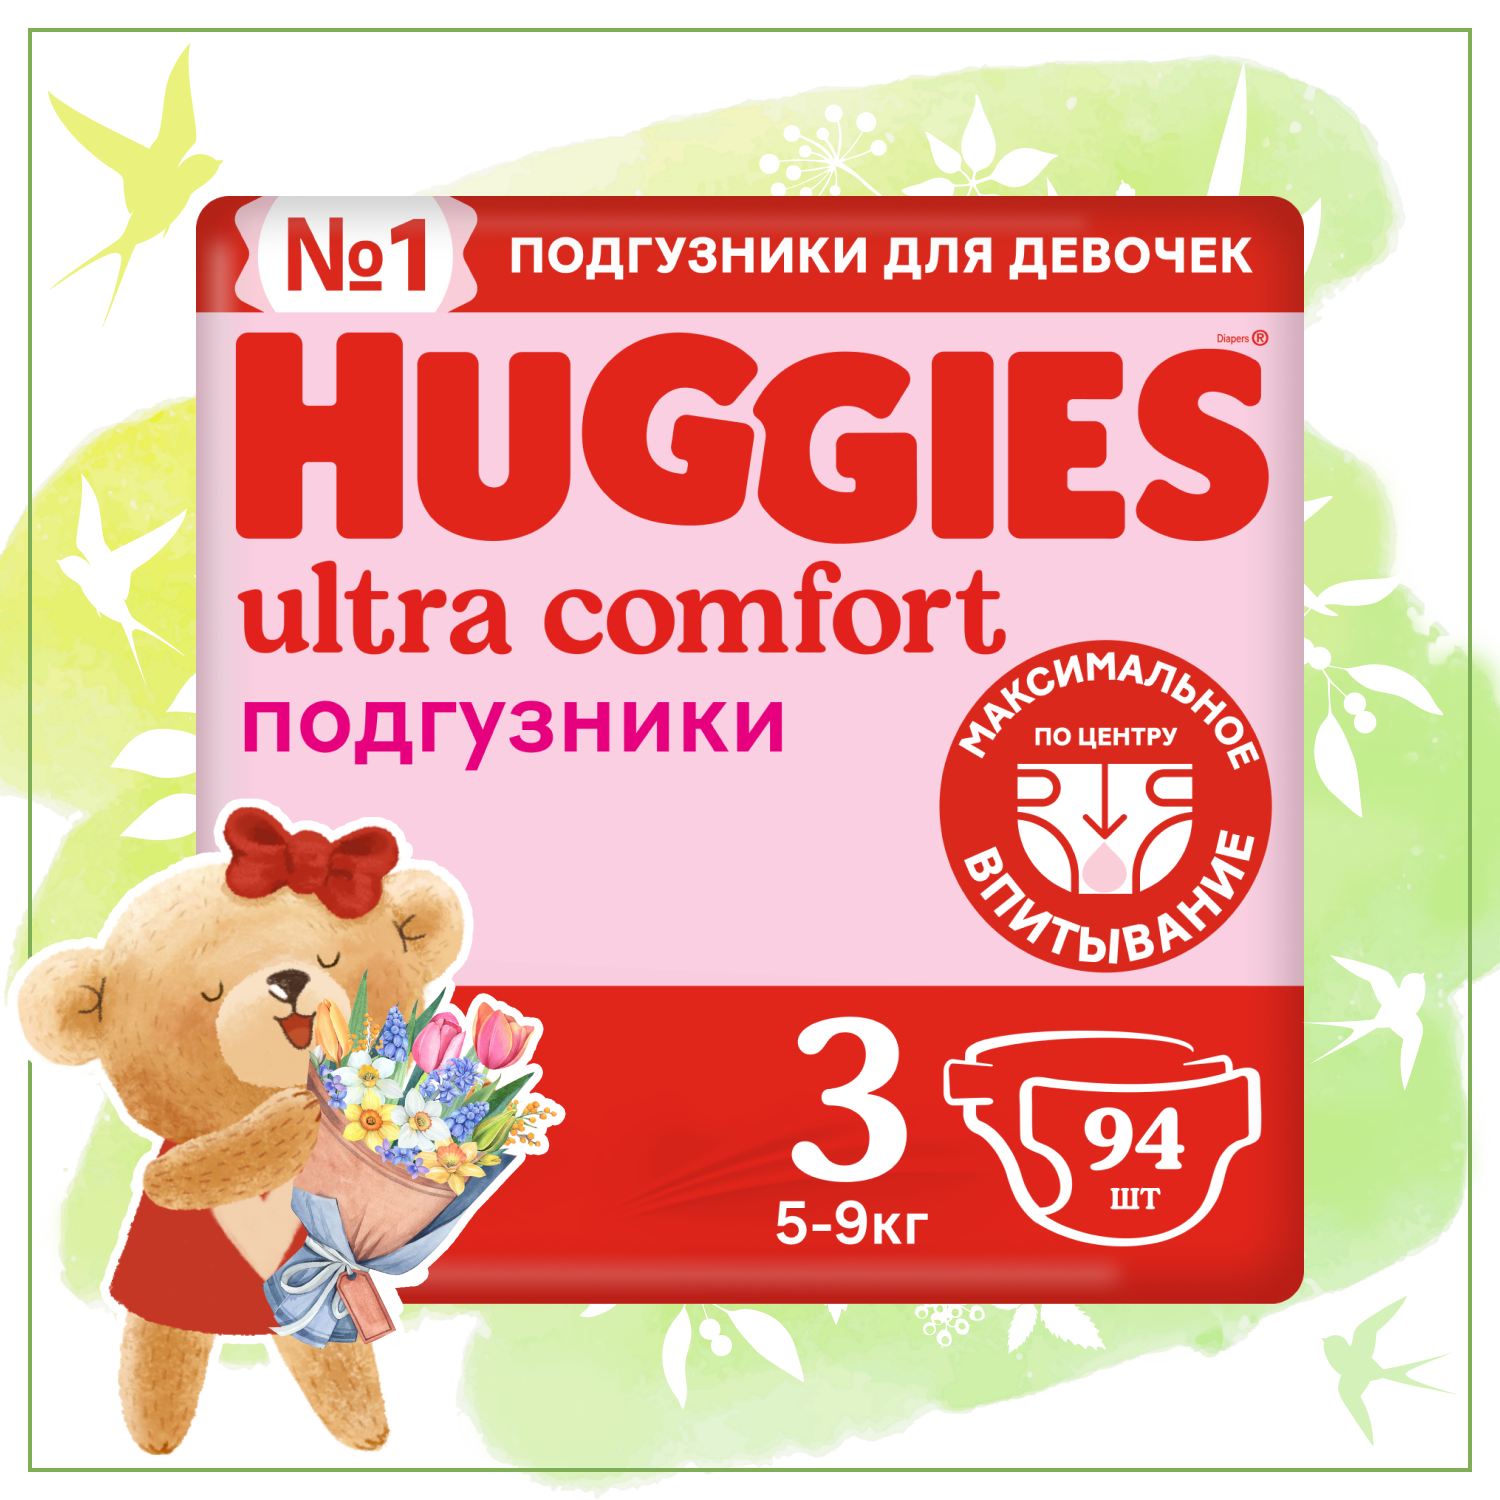 Подгузники для девочек Huggies Ultra Comfort 3 5-9кг 94шт - фото 1